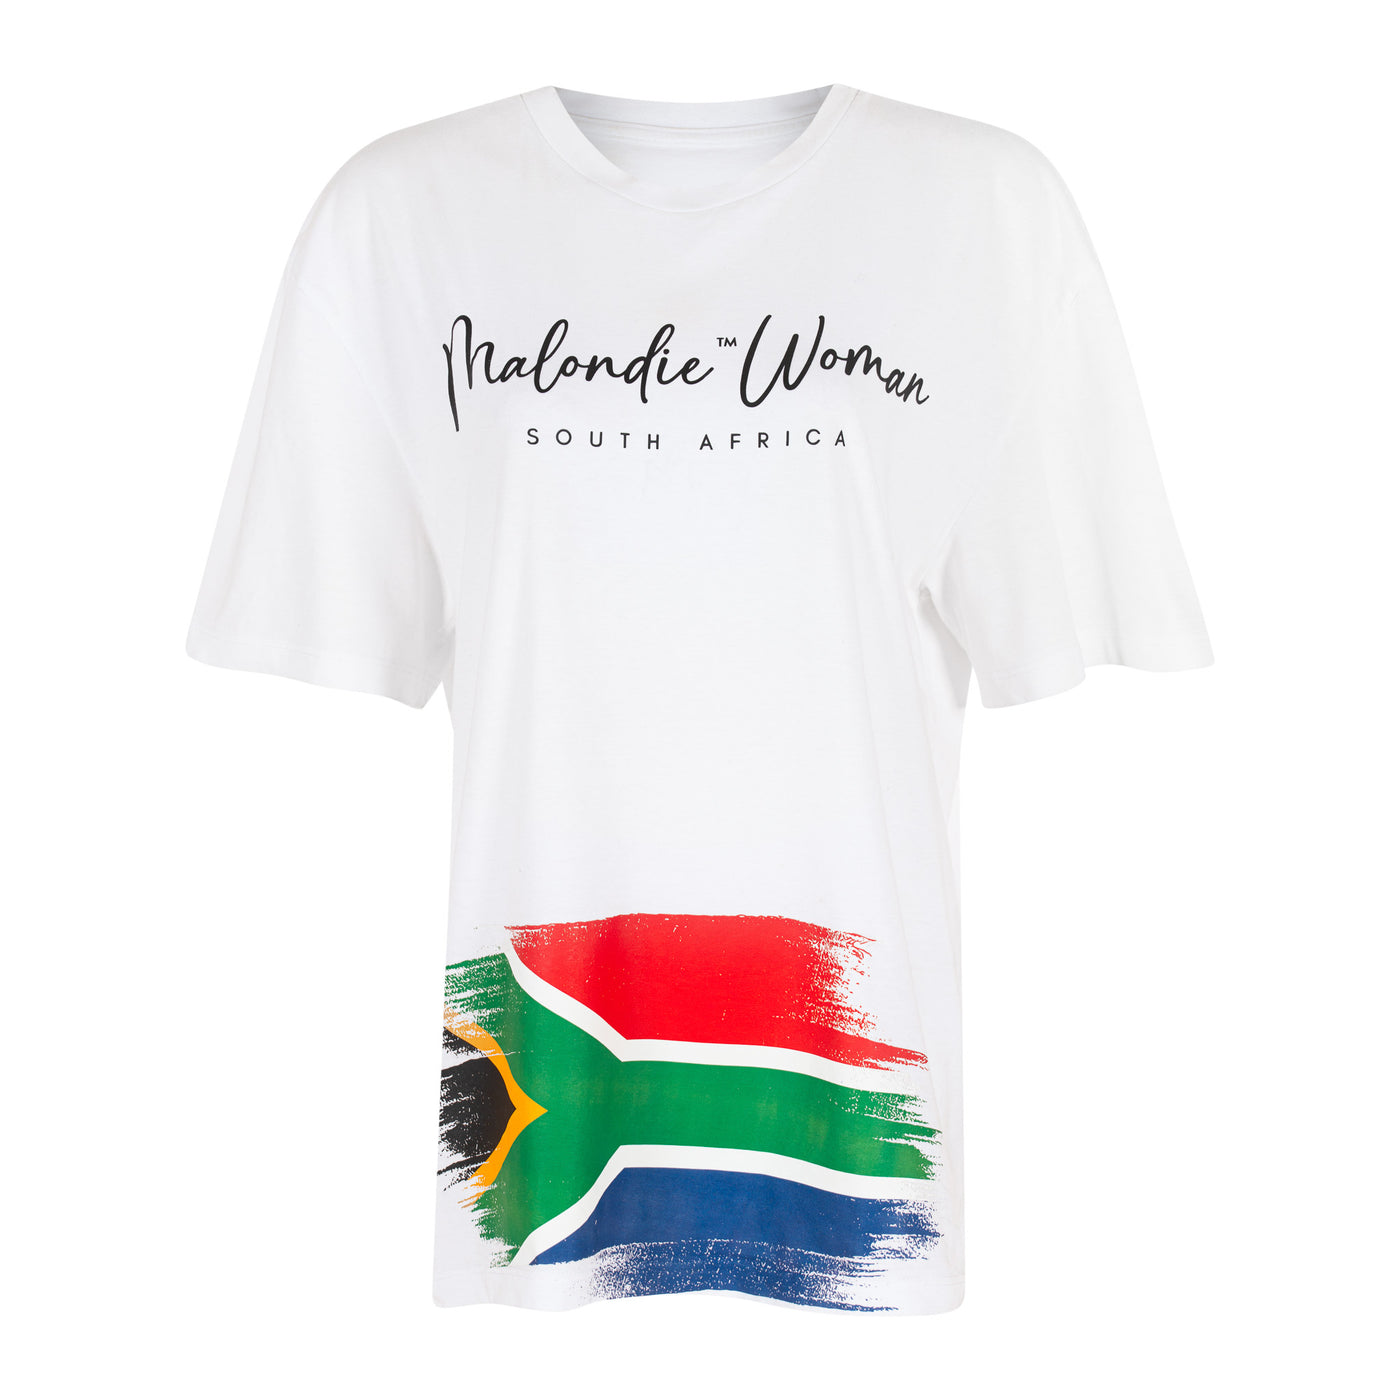 Malondie Woman Oversize T-shirt